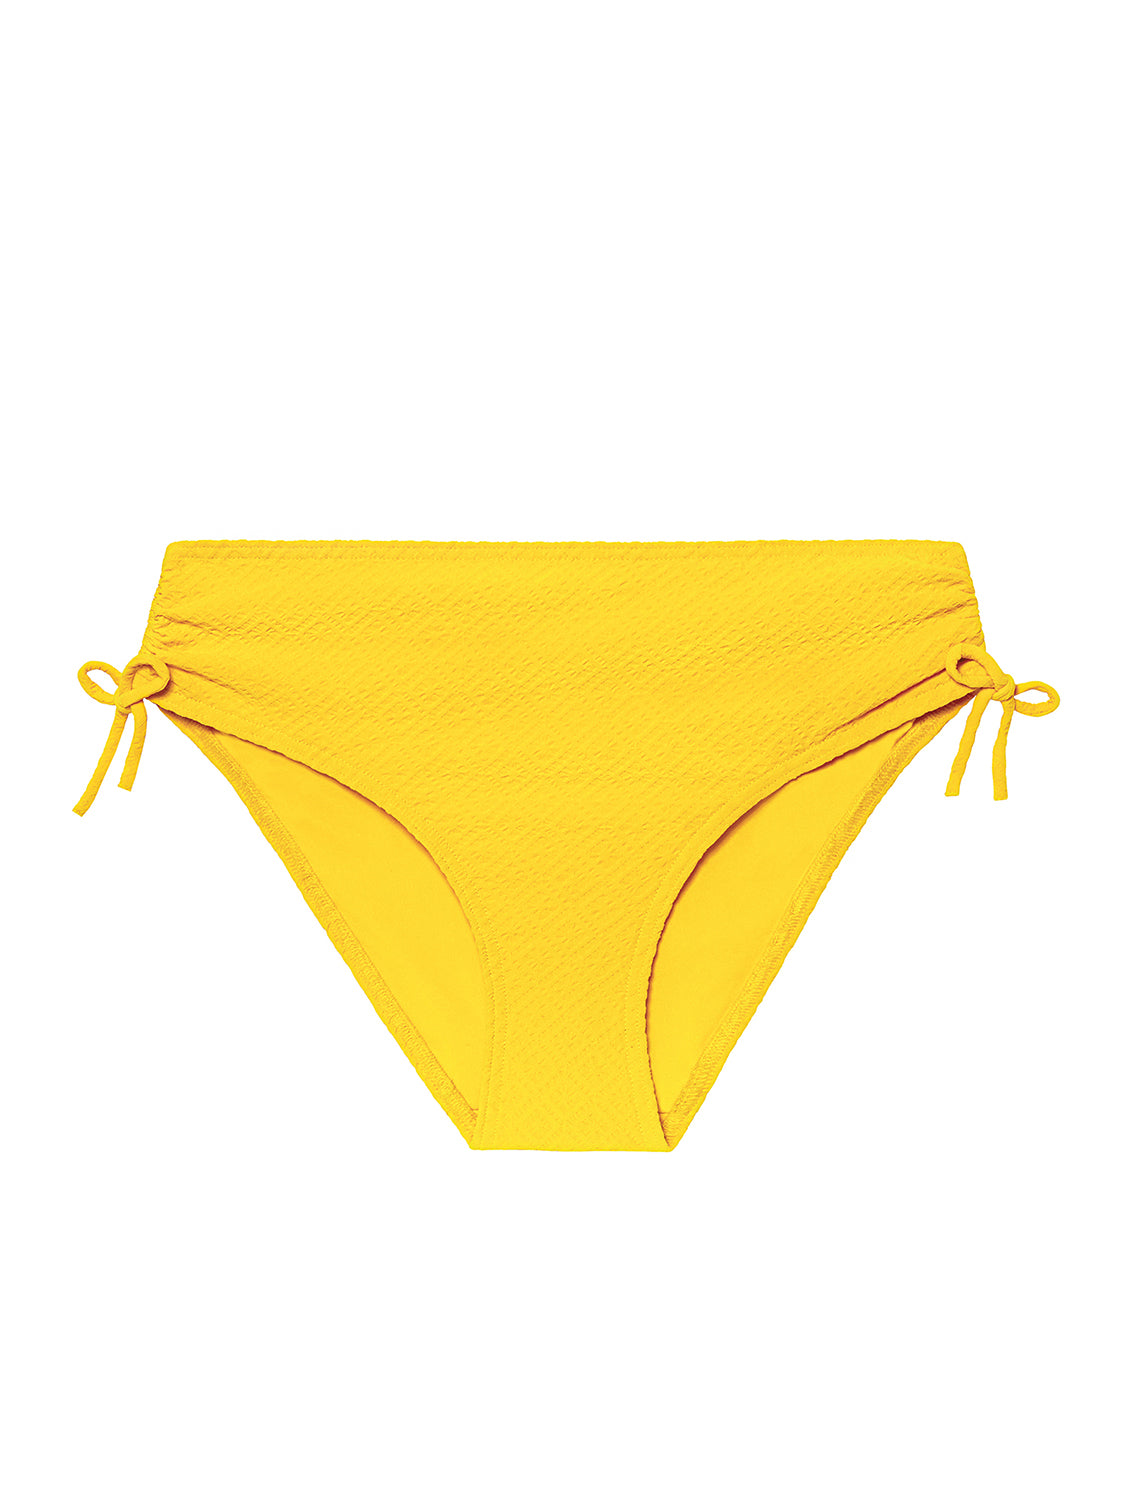 Dune Retro Brief - Mimosa Yellow